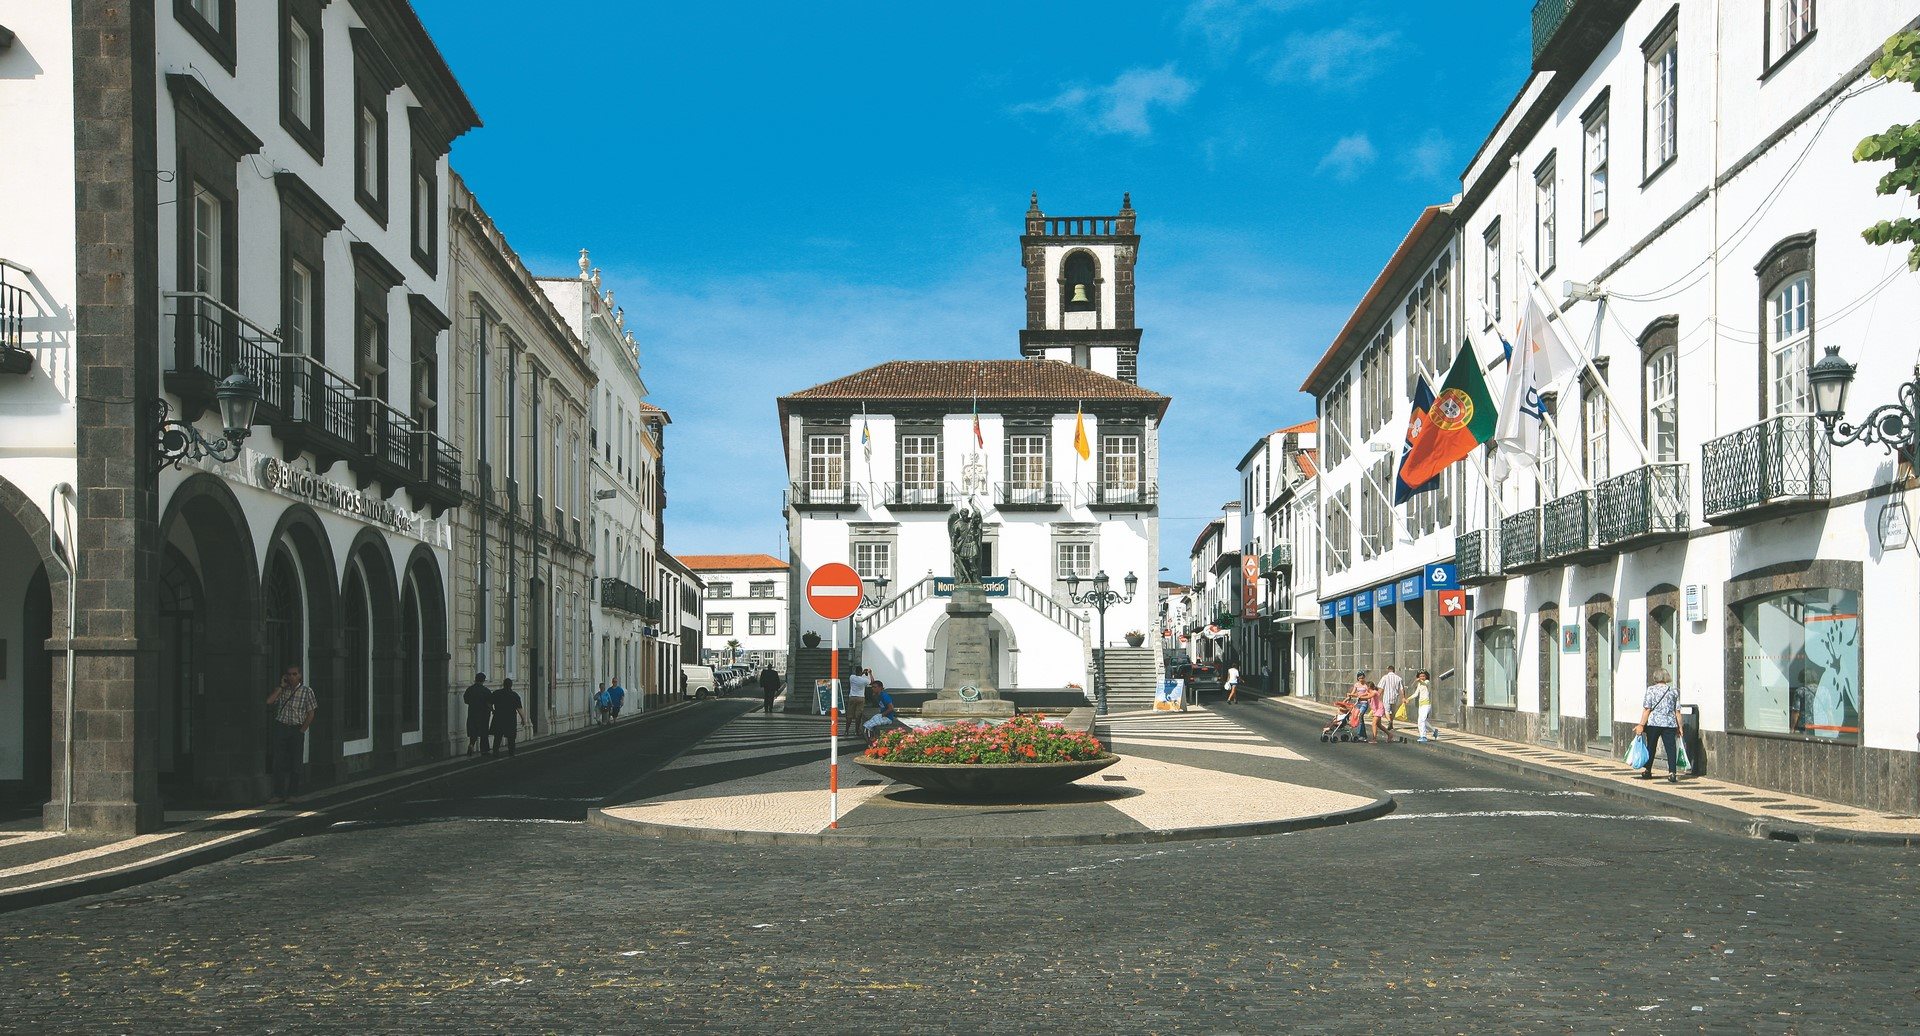 Municipio Square - São Miguel Island